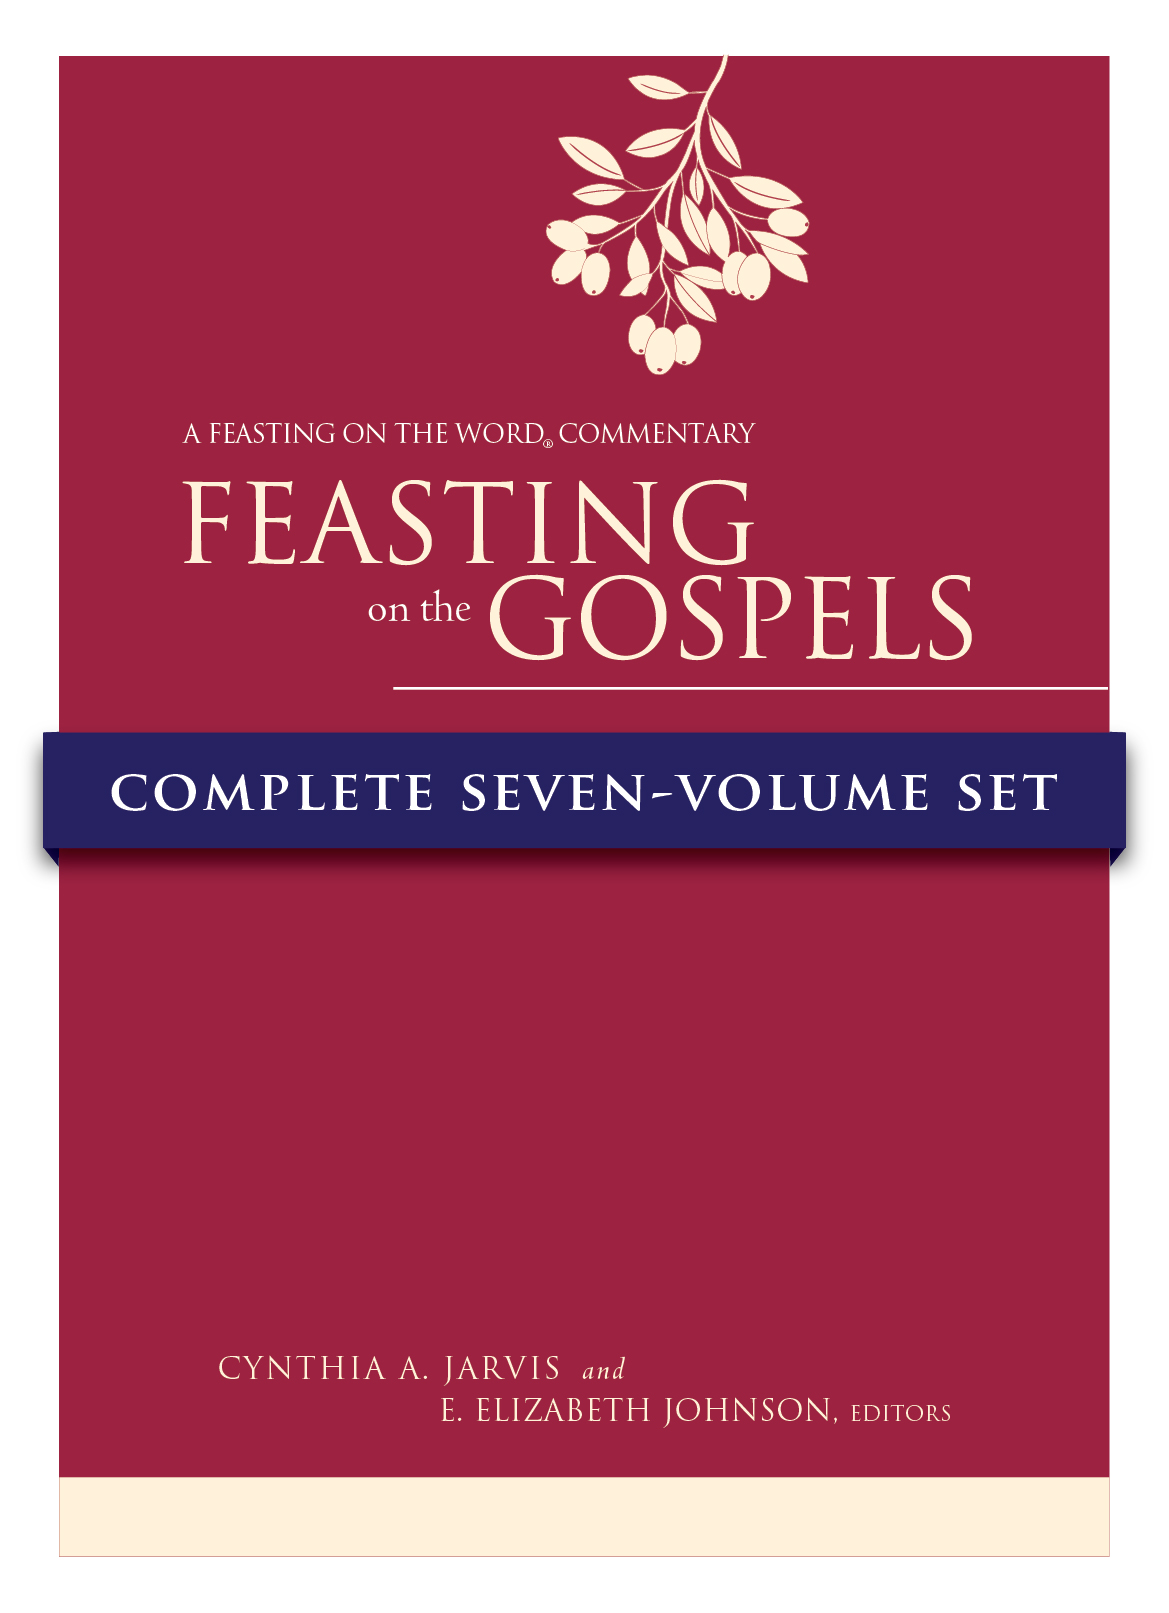 Feasting on the Gospels Complete Seven-Volume Set